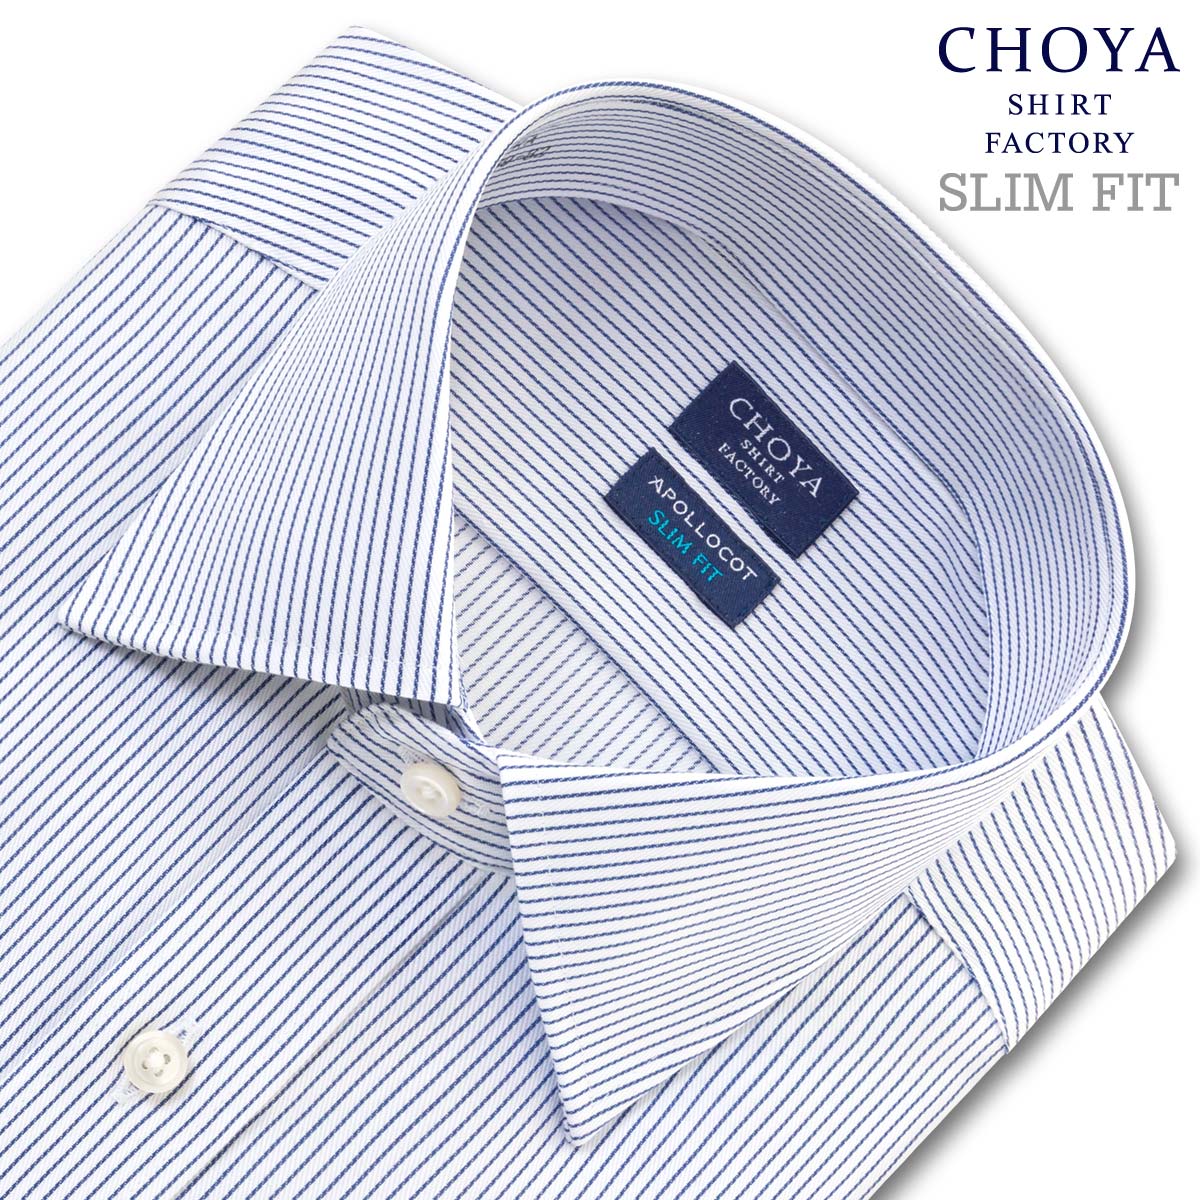 Yシャツ スリムフィット アポロコット 長袖 ワイシャツ メンズ 形態安定 ワイドカラー ブルーペンシルストライプ ツイル 綿100% CHOYA SHIRT FACTORY(cfd832-455)